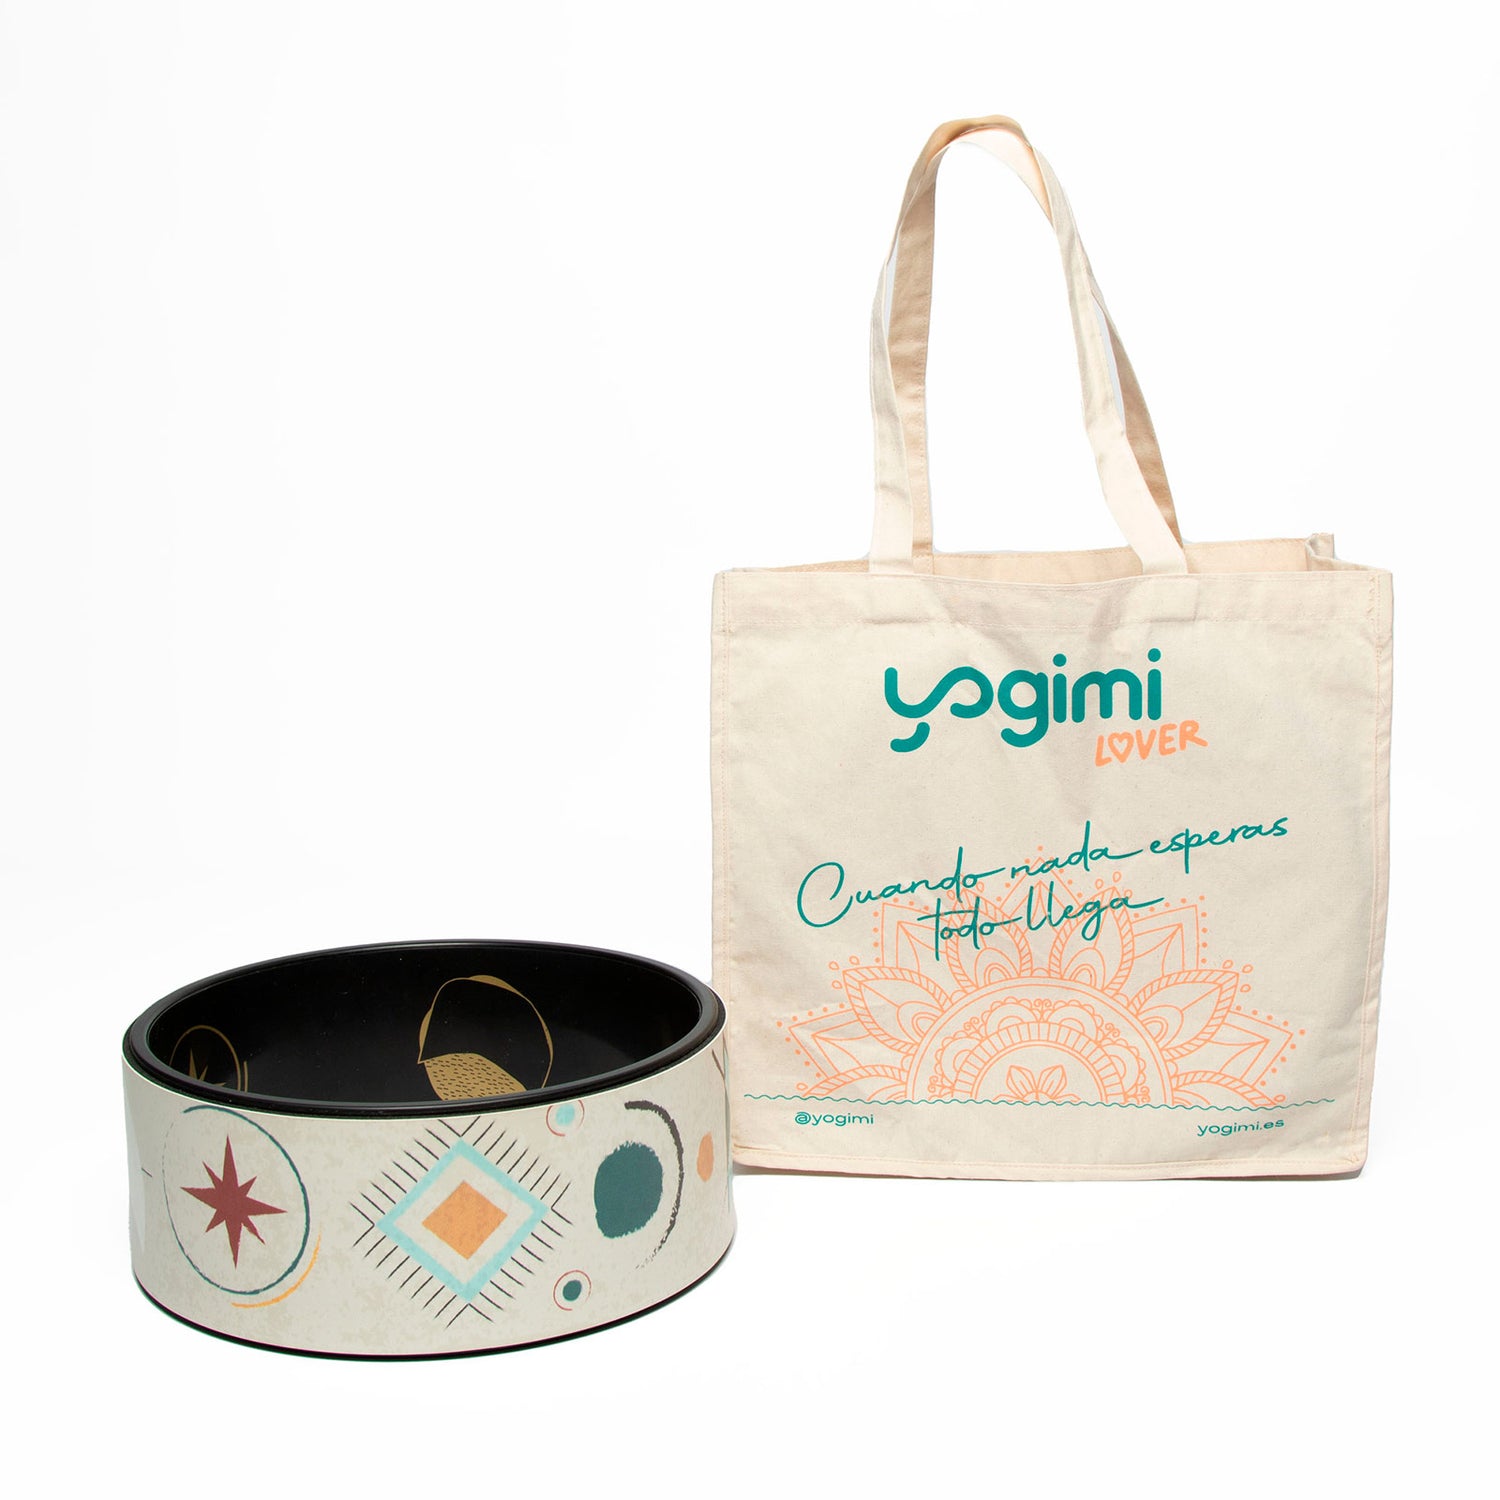 Rueda de yoga supergrip decorada con motivos y bolsa portarueda de regalo.